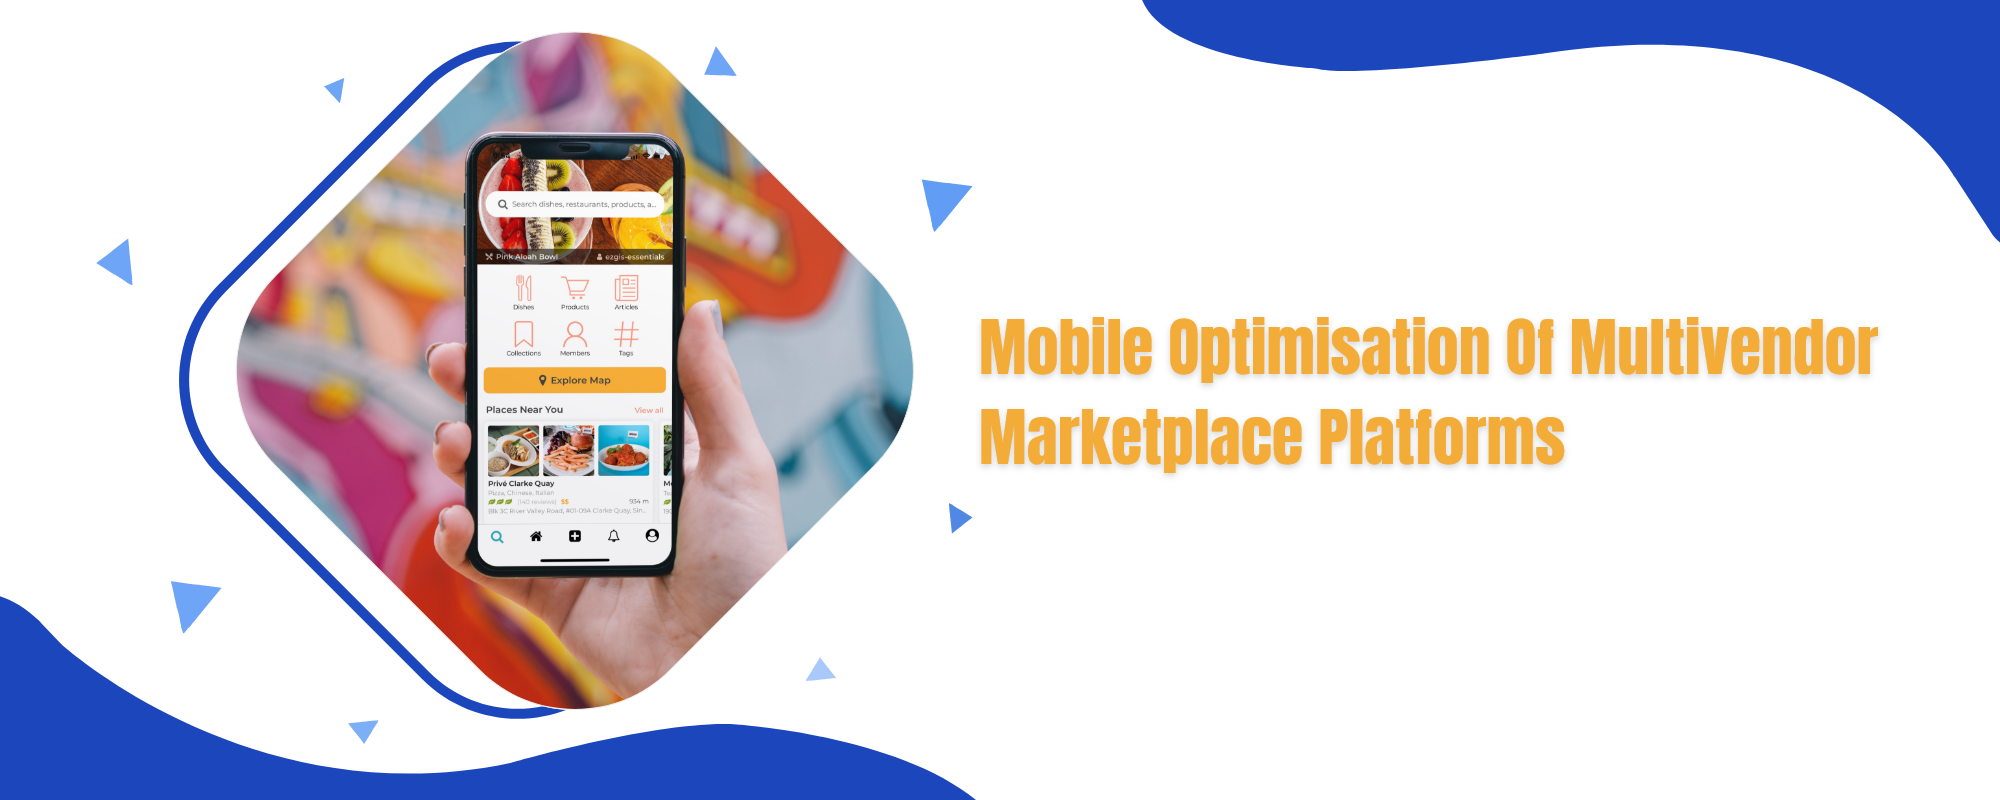 Mobile optimisation of multivendor marketplace platforms